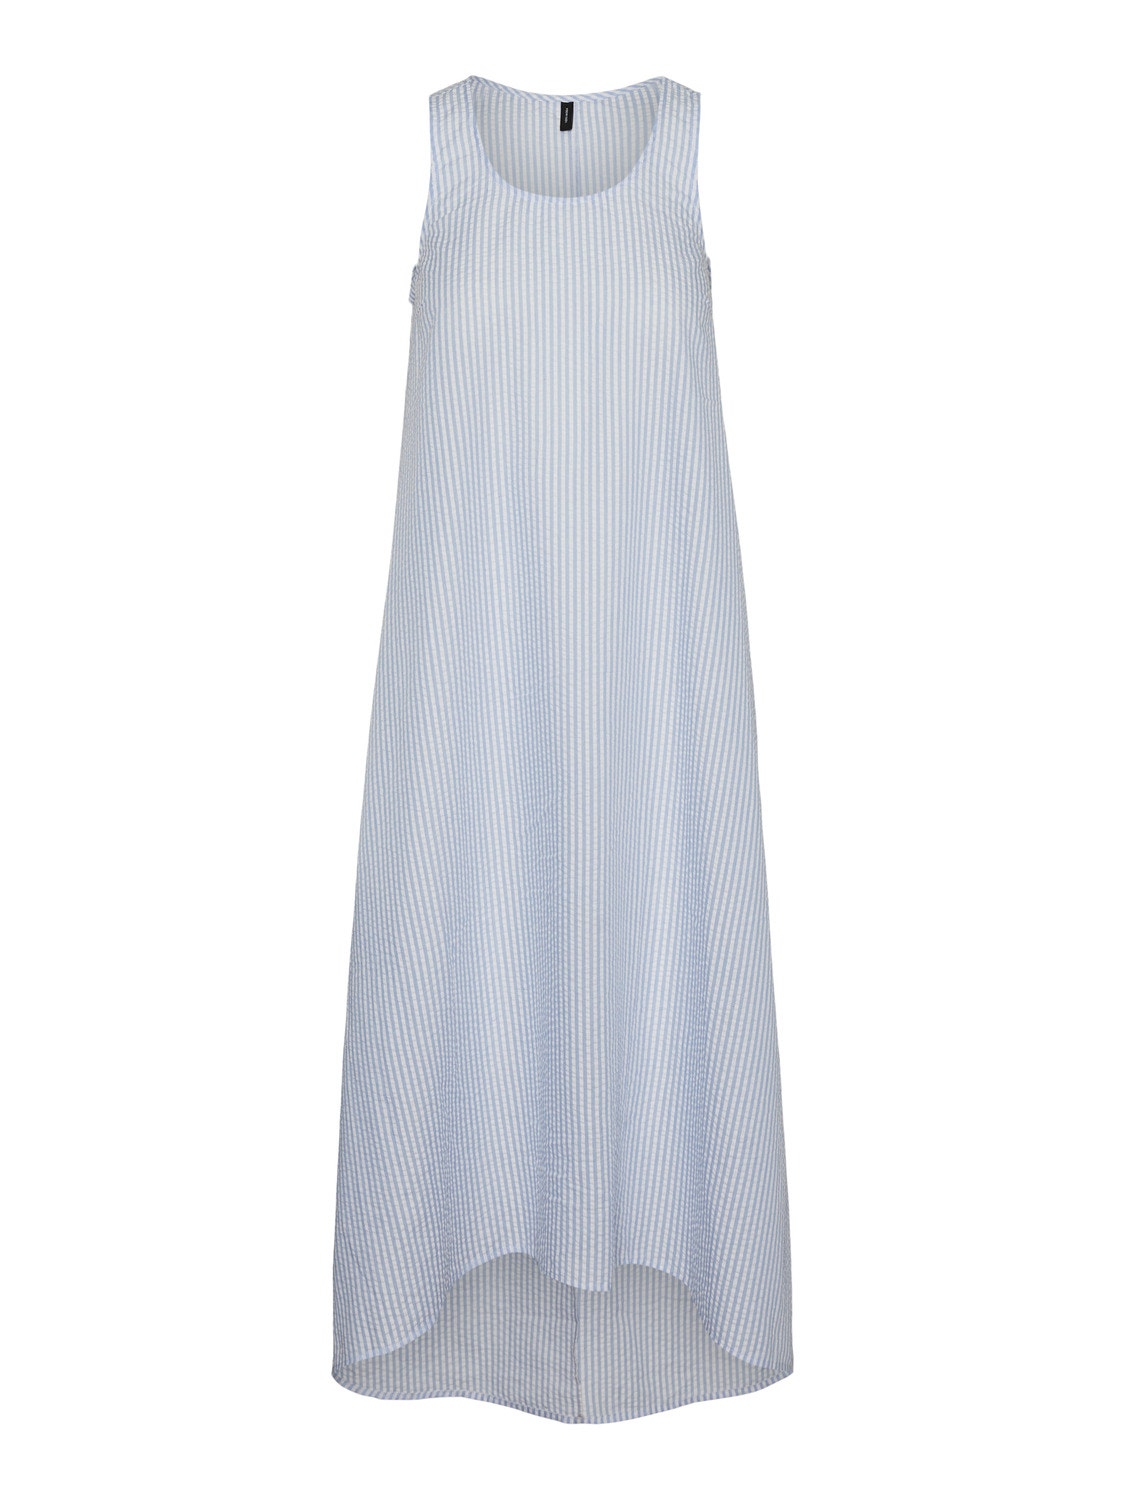 Vero Moda VMMOLLY Lange jurk -Vista Blue - 10316386